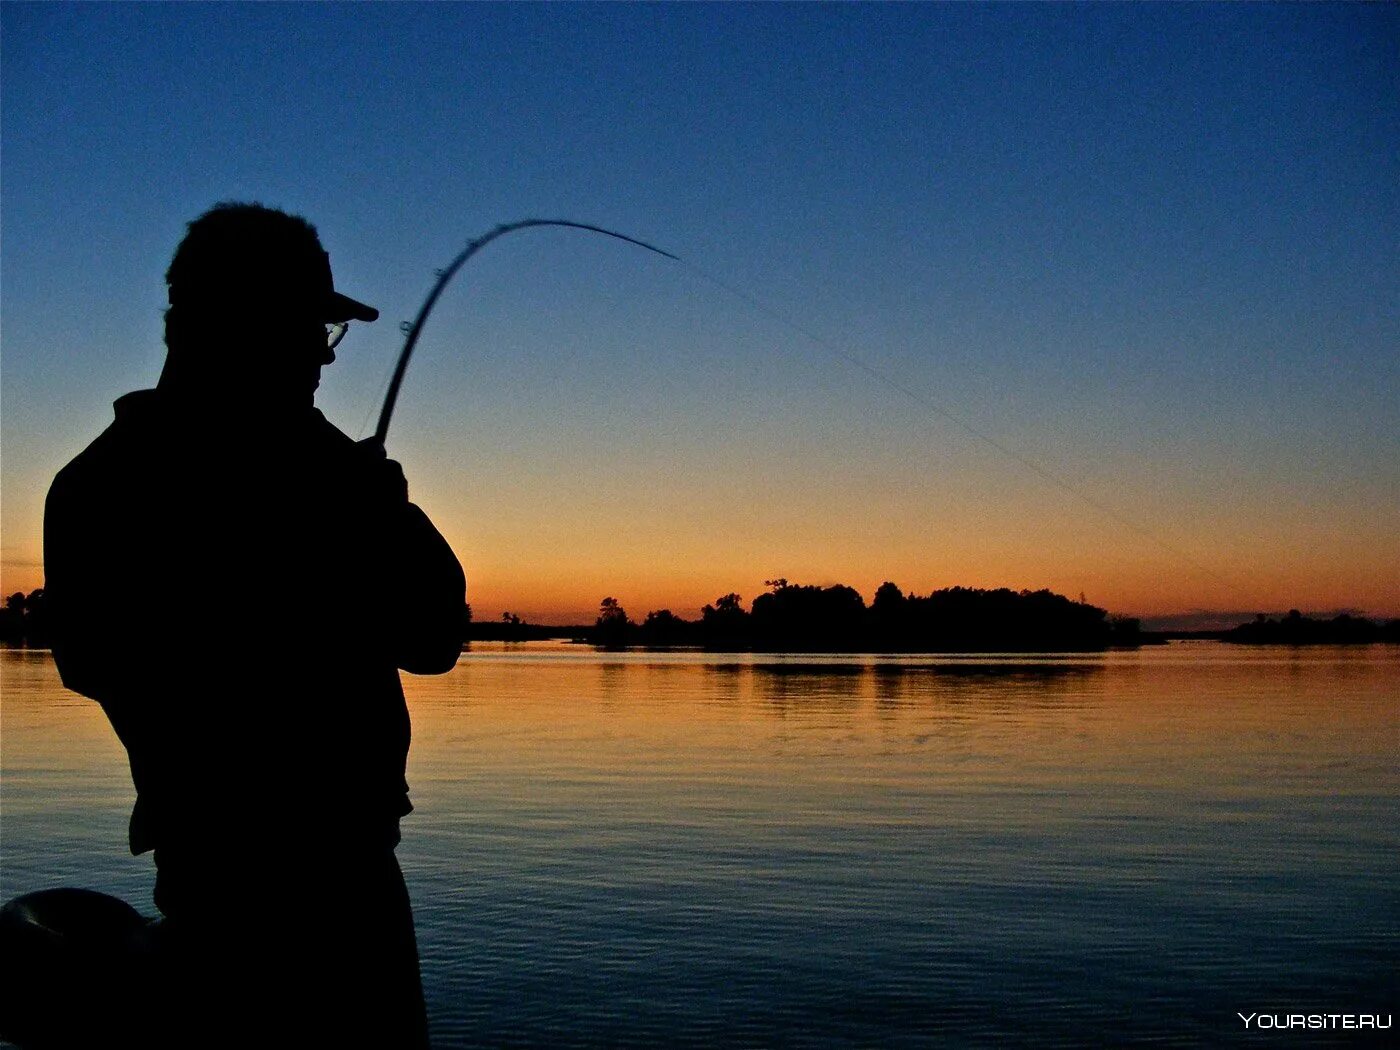 Ловить удочкой сонник. Рыбалка. Рыбак с удочкой. Рыбак со спиннингом. Ночная рыбалка.